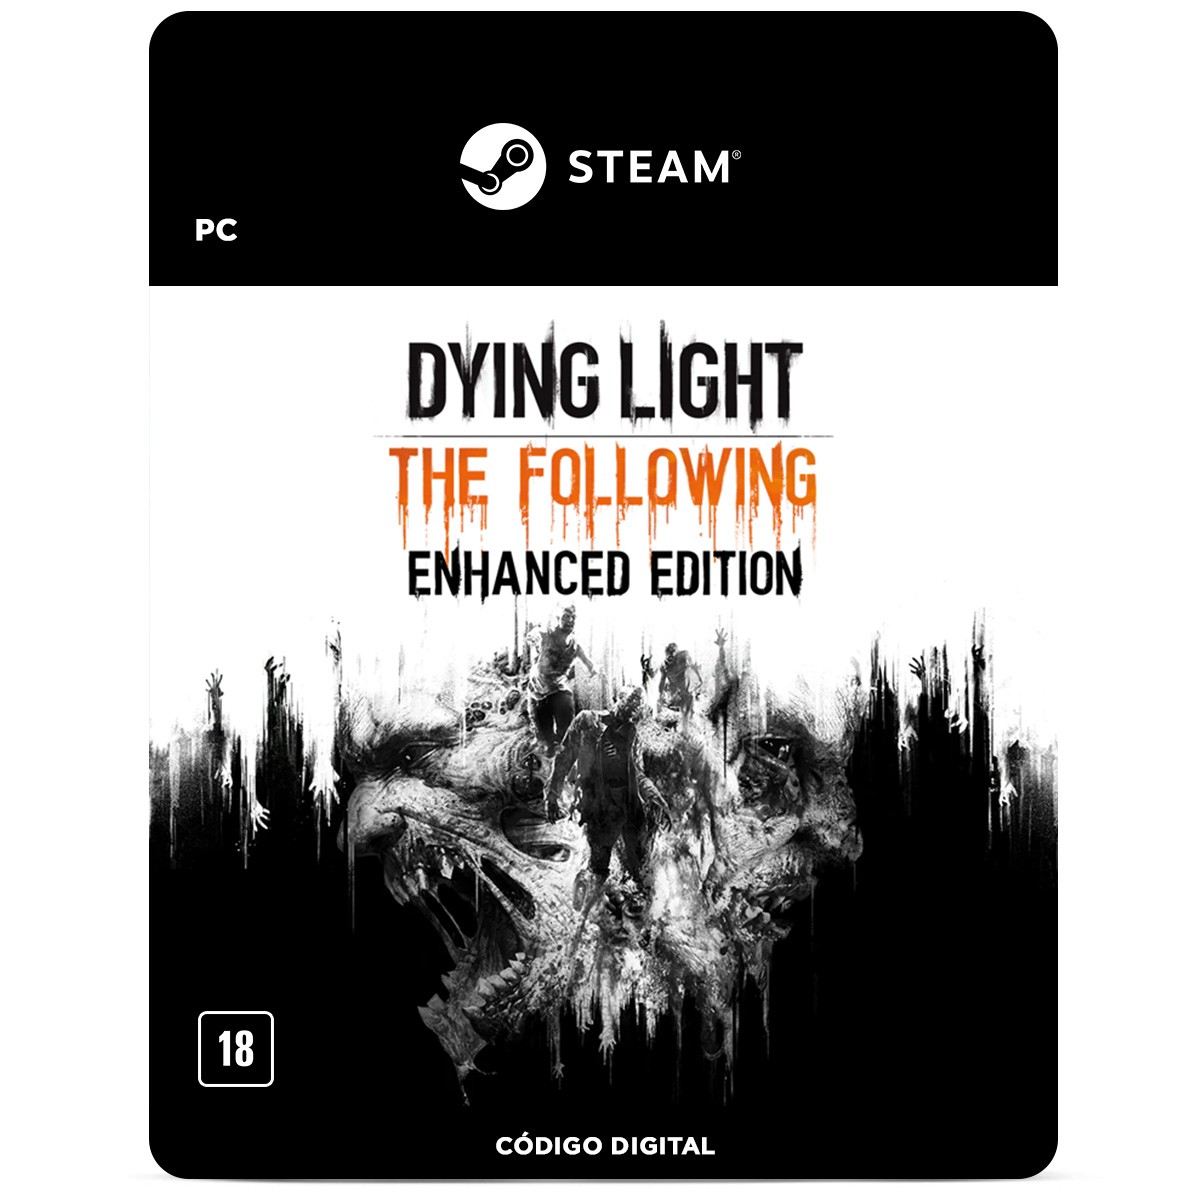 Dying Light 2: requisitos mínimos e recomendados no PC